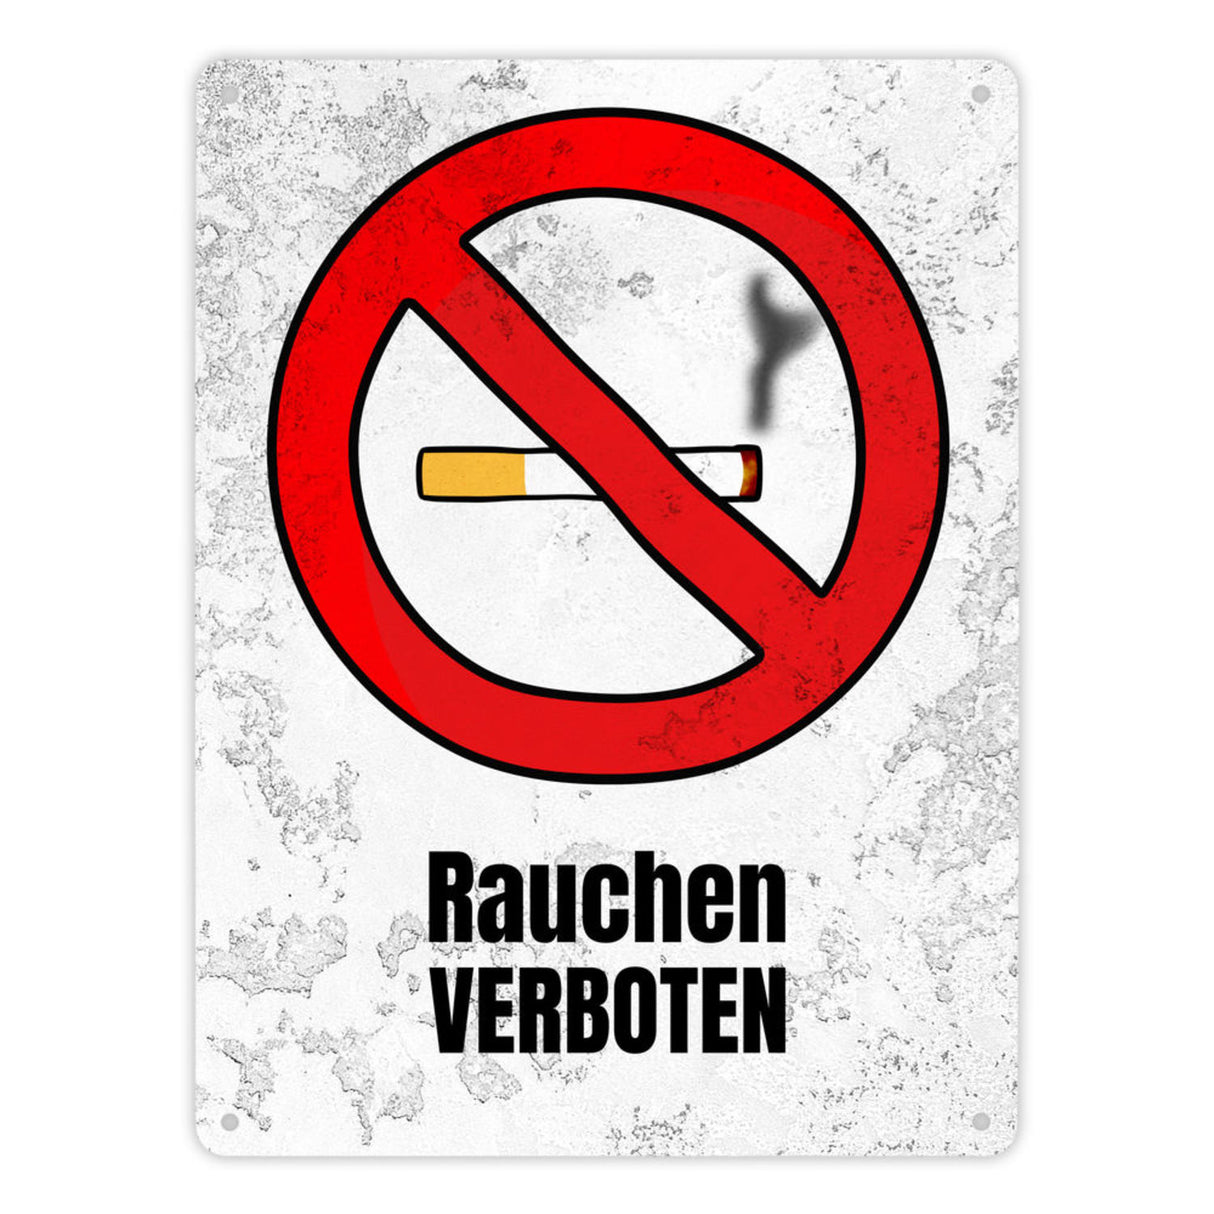 Rauchen verboten Verbotsschild im Comic-Stil